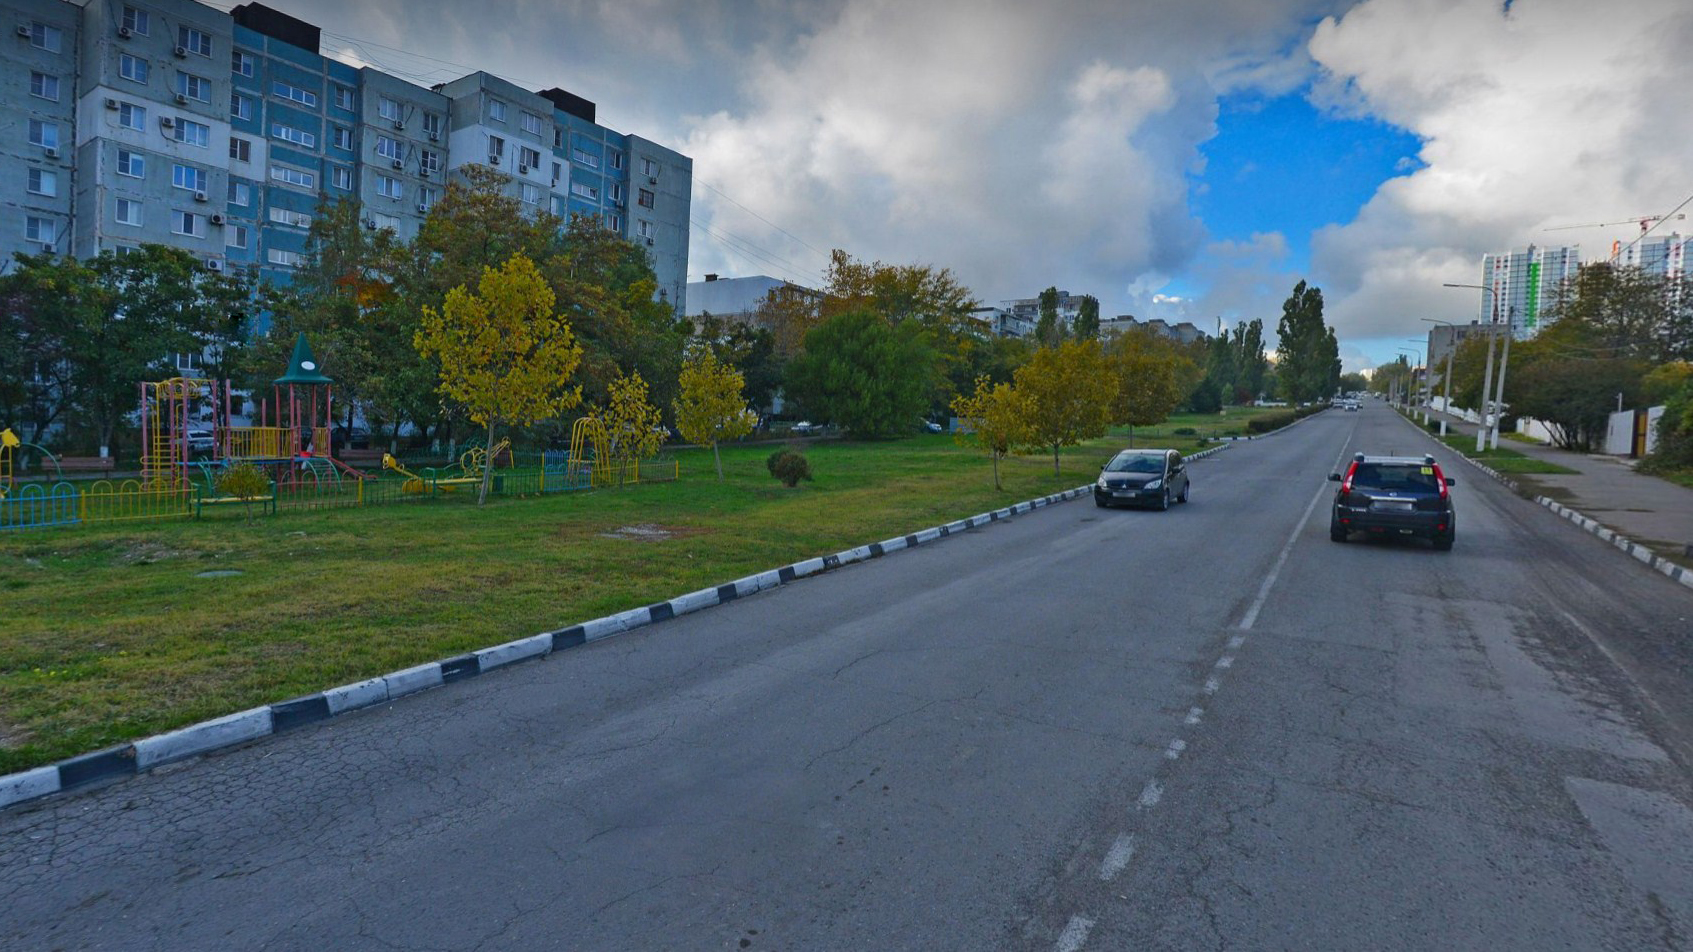 Ремонт тротуара на улице Новороссийска будет идти поэтапно 3 года